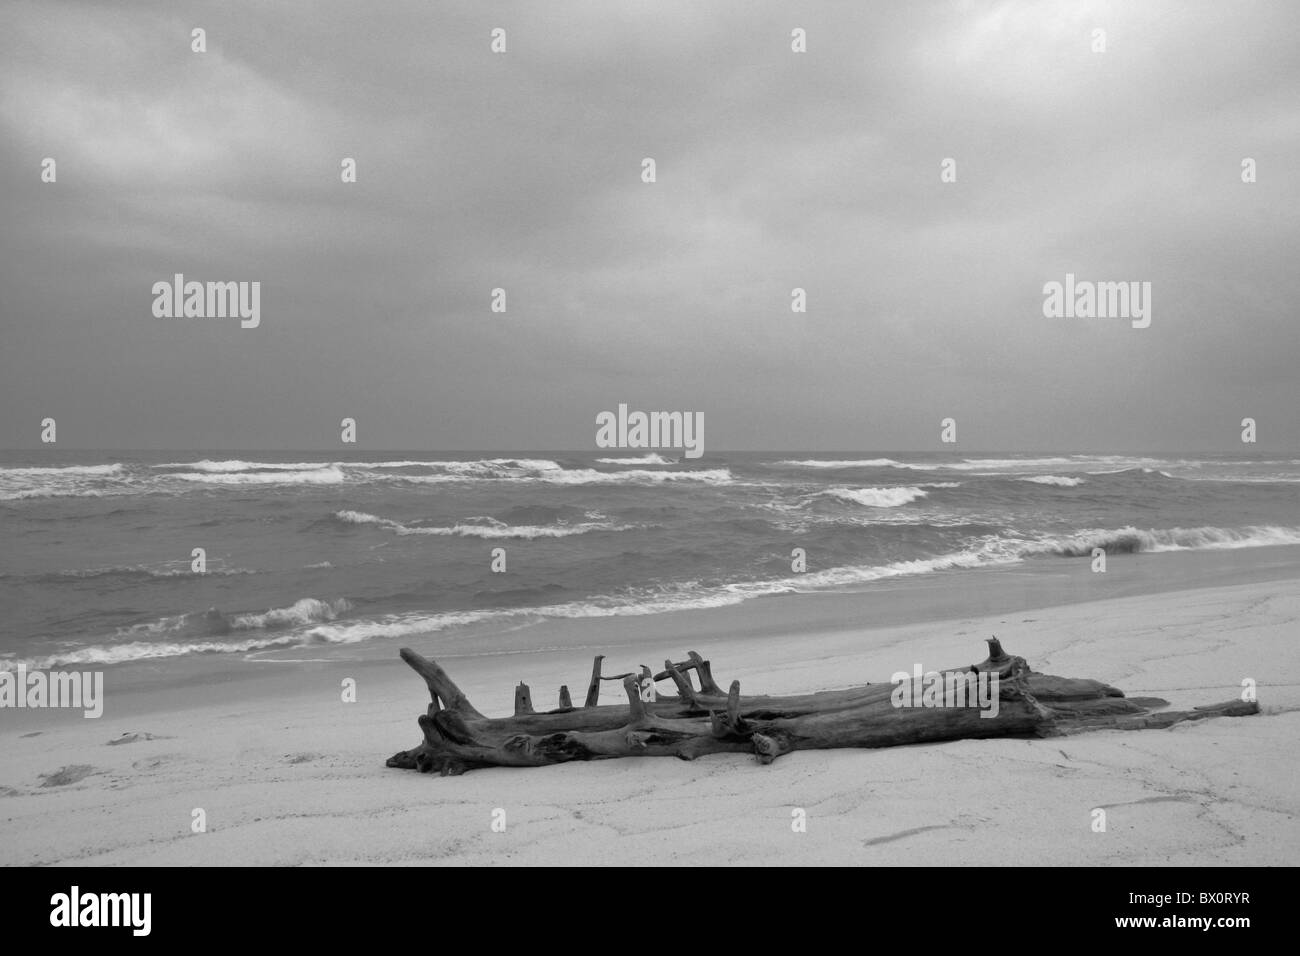 dunkle stürmische Meer Golf von Mexiko Himmel sandigen Strand mit großen Holz Baum Schutt auf Sand schwarz und weiss Stockfoto